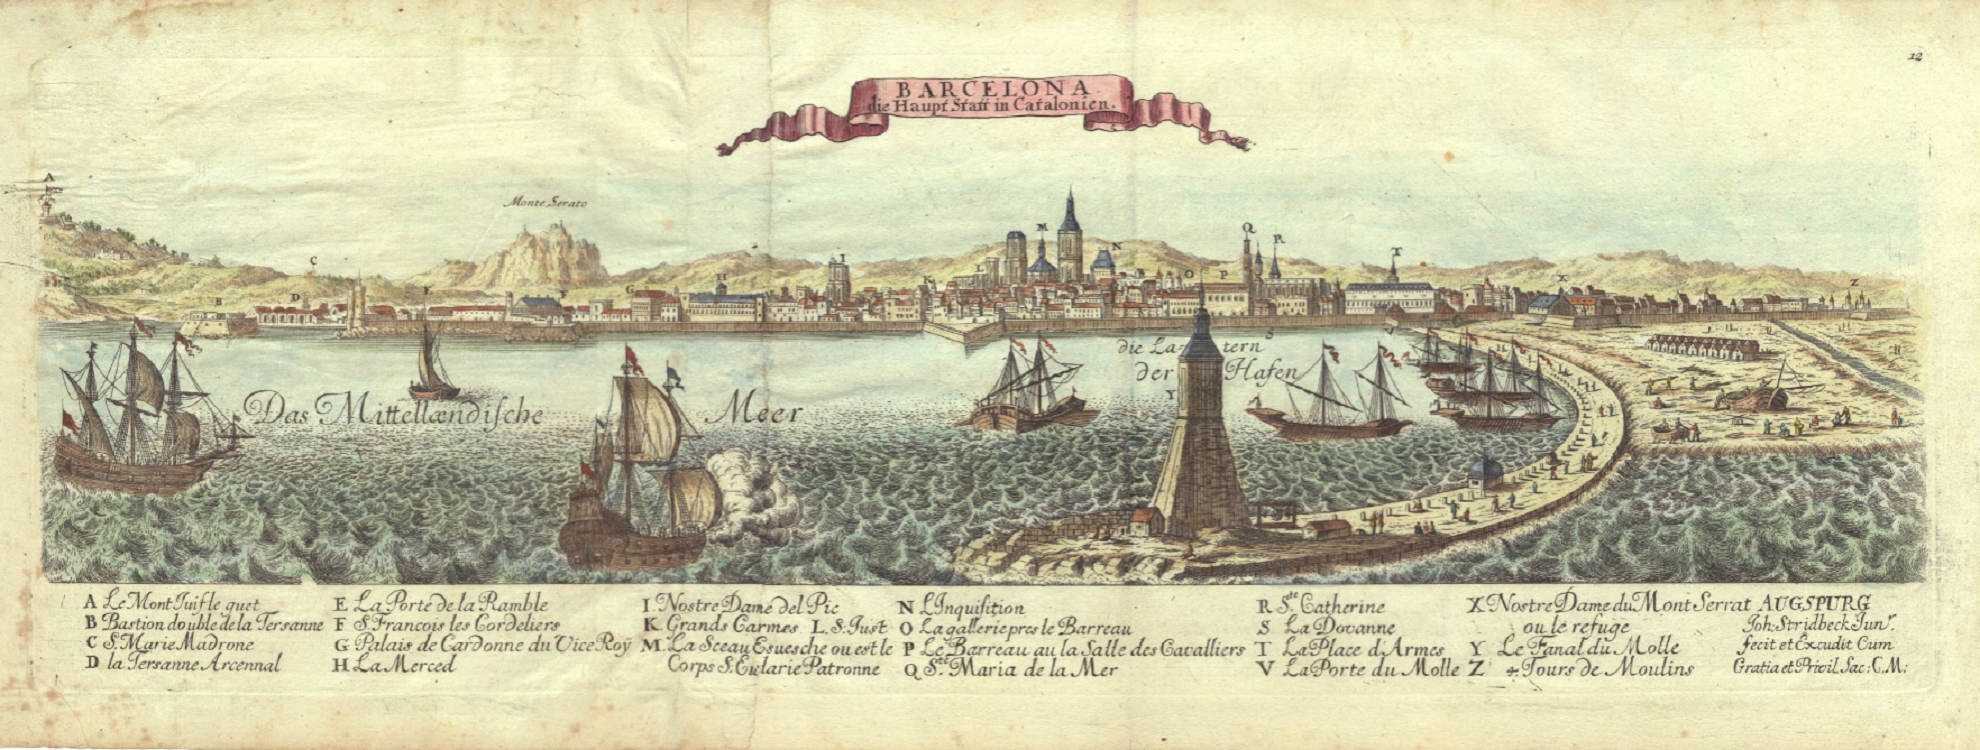 Gravat de Barcelona (principis del segle XVIII). Font: Cartoteca de Catalunya